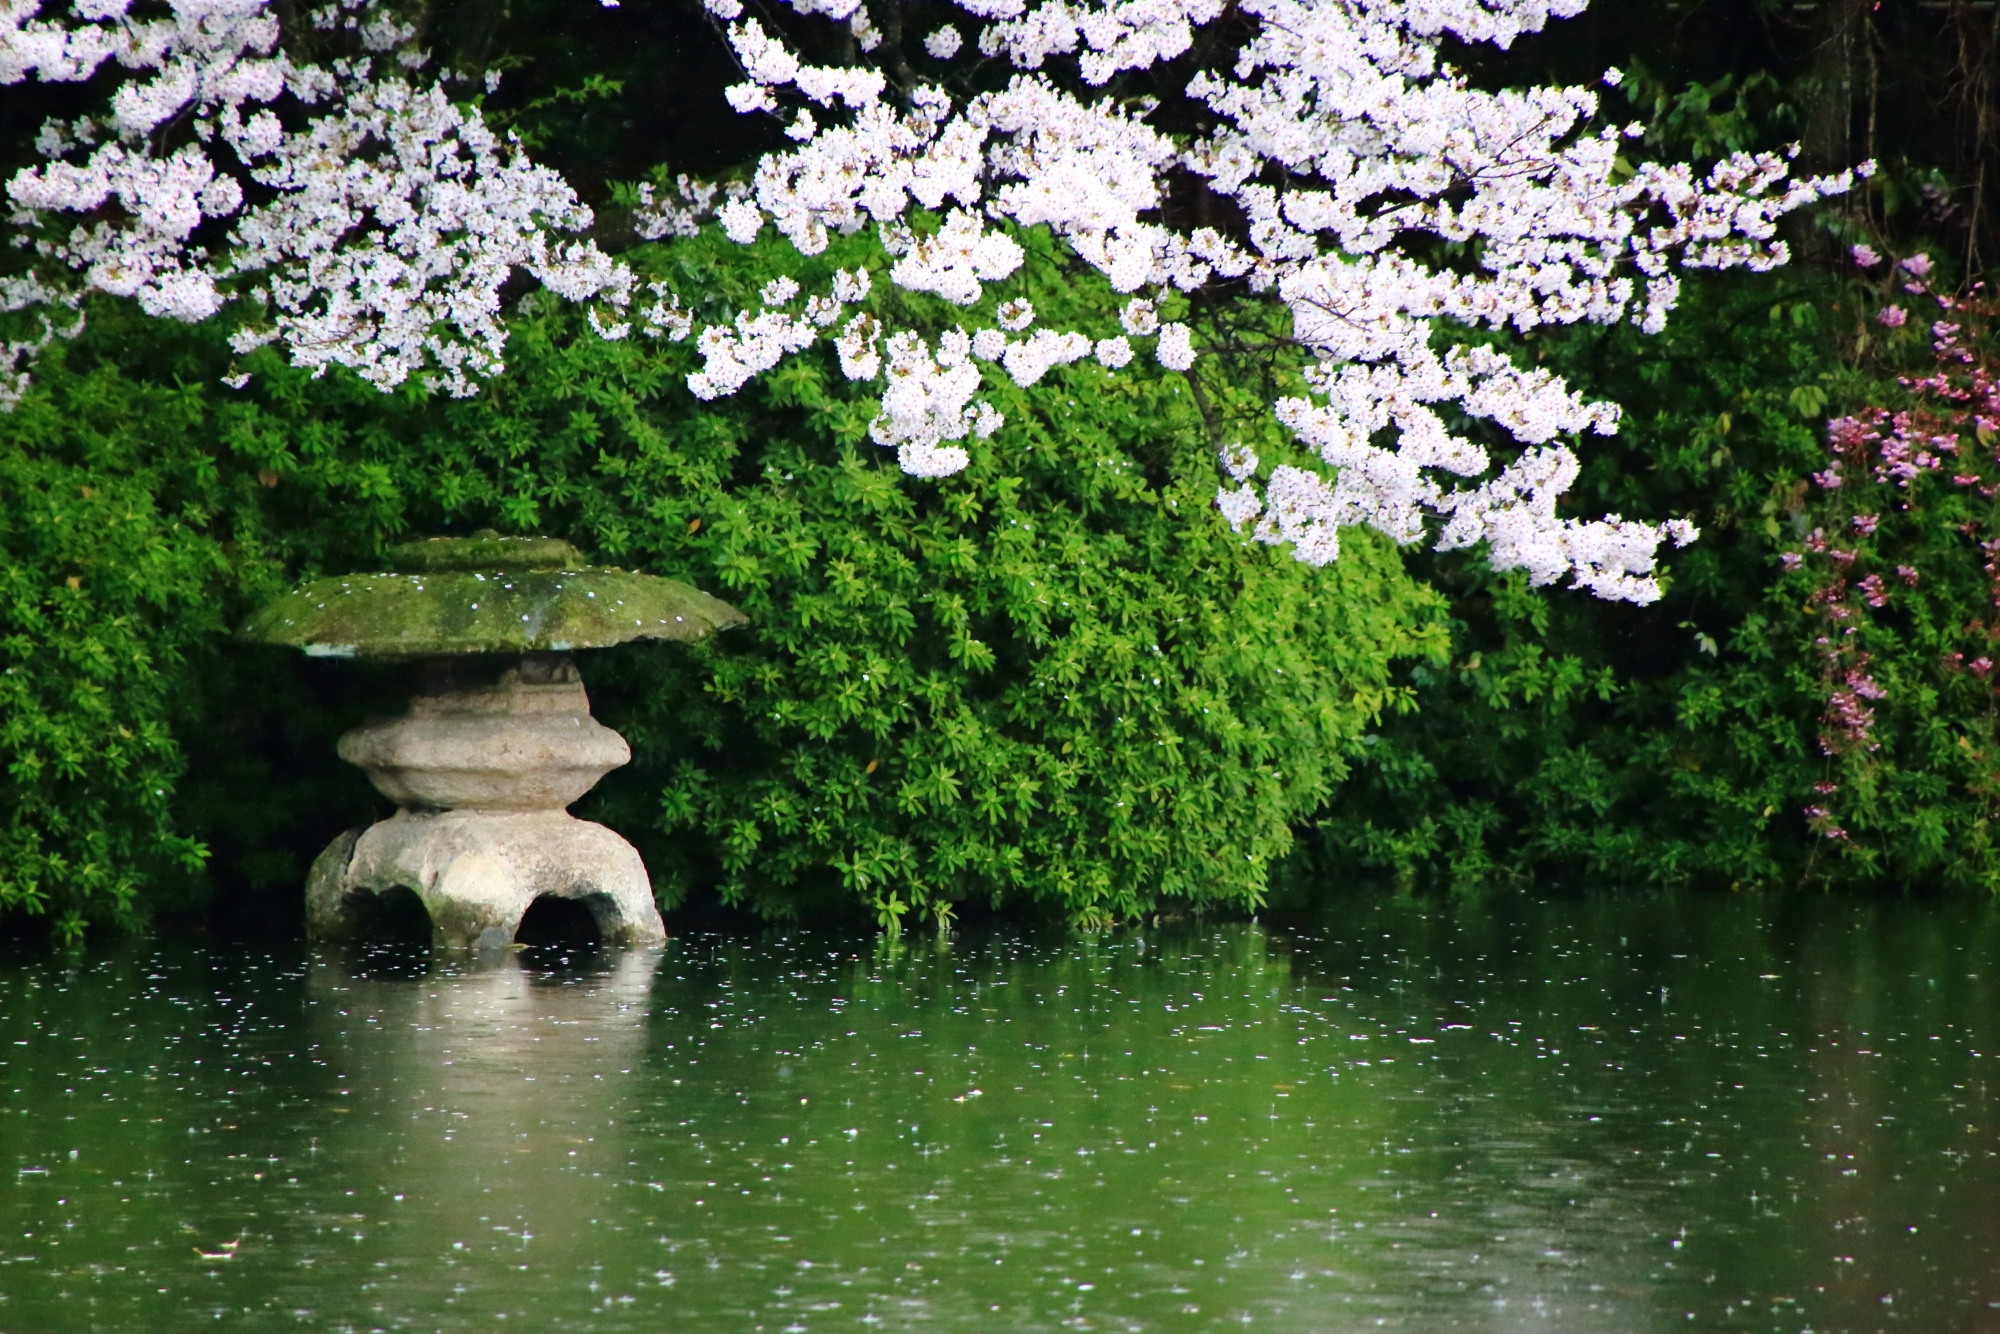 つつじの刈り込みに埋もれた水辺の燈籠を春色に染める桜